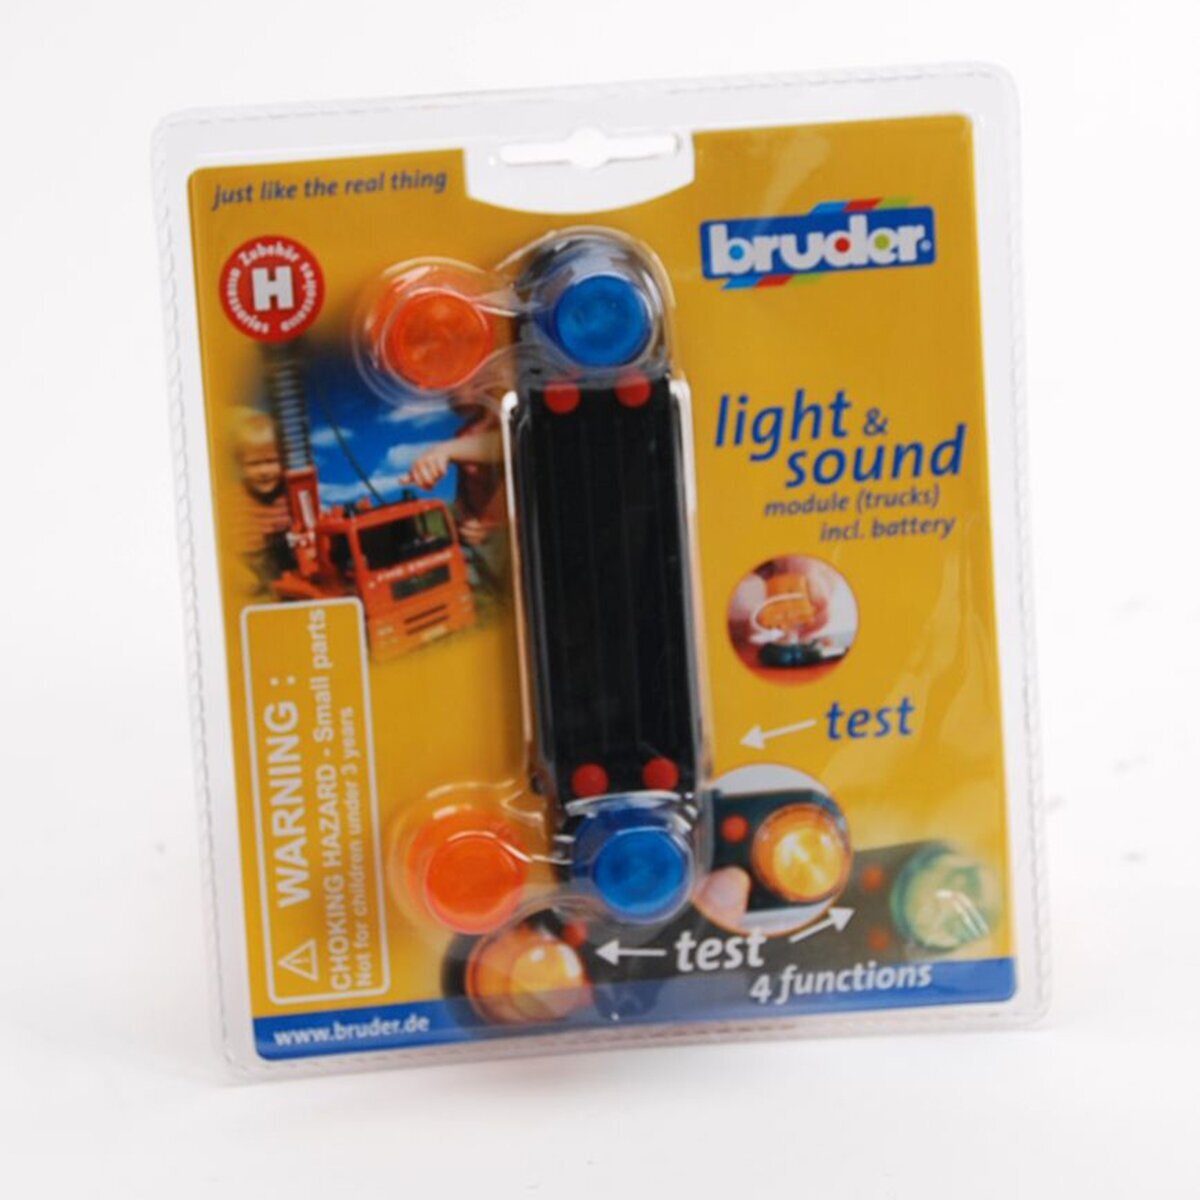 Аксессуары H: модуль со световыми и звуковыми эффектами для автомобилей Bruder - фото №13